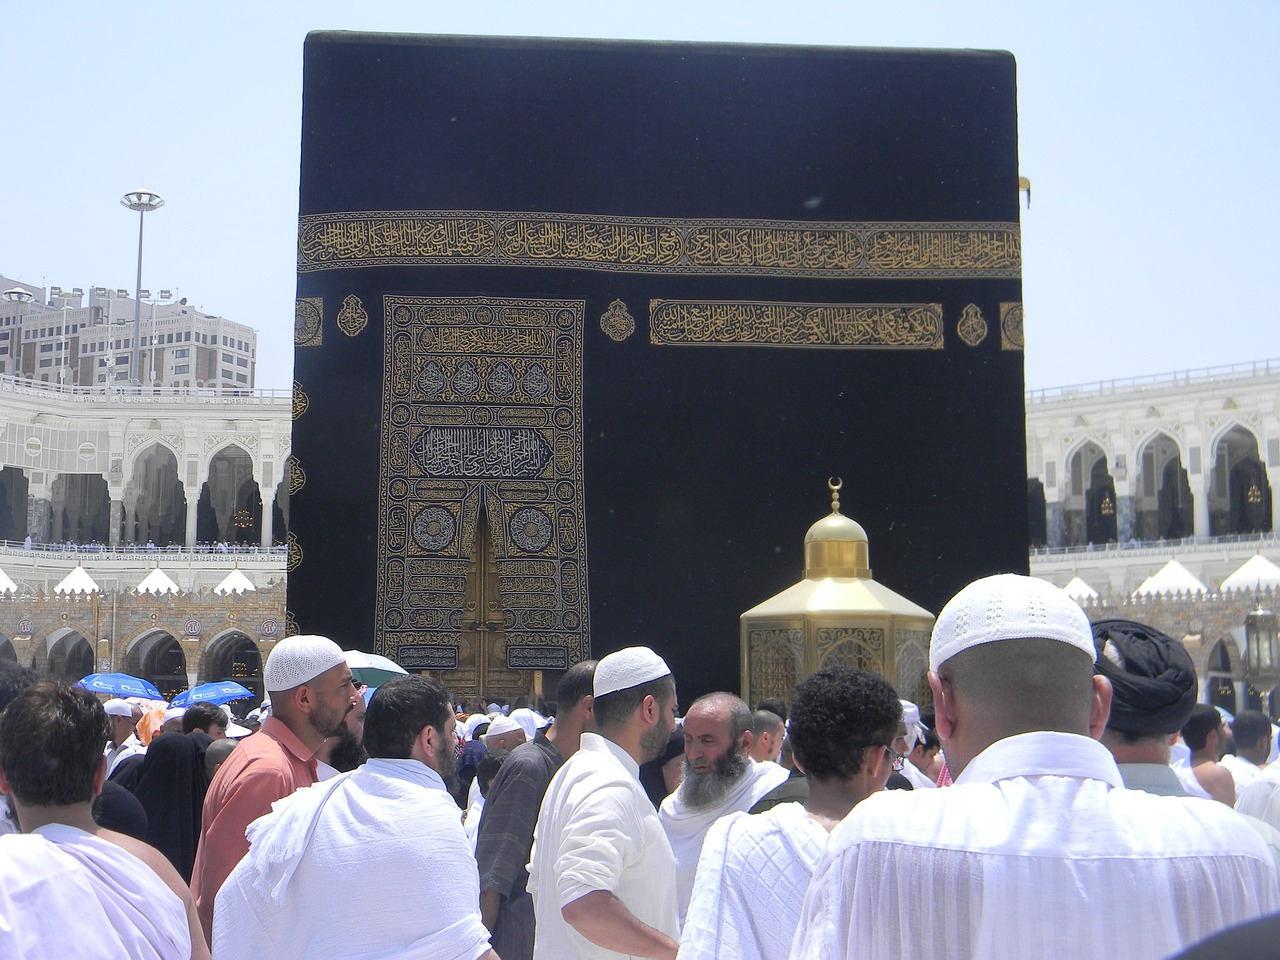 Daftar Haji Plus Kemenag Apa Bisa Berapa Waktu Tunggunya